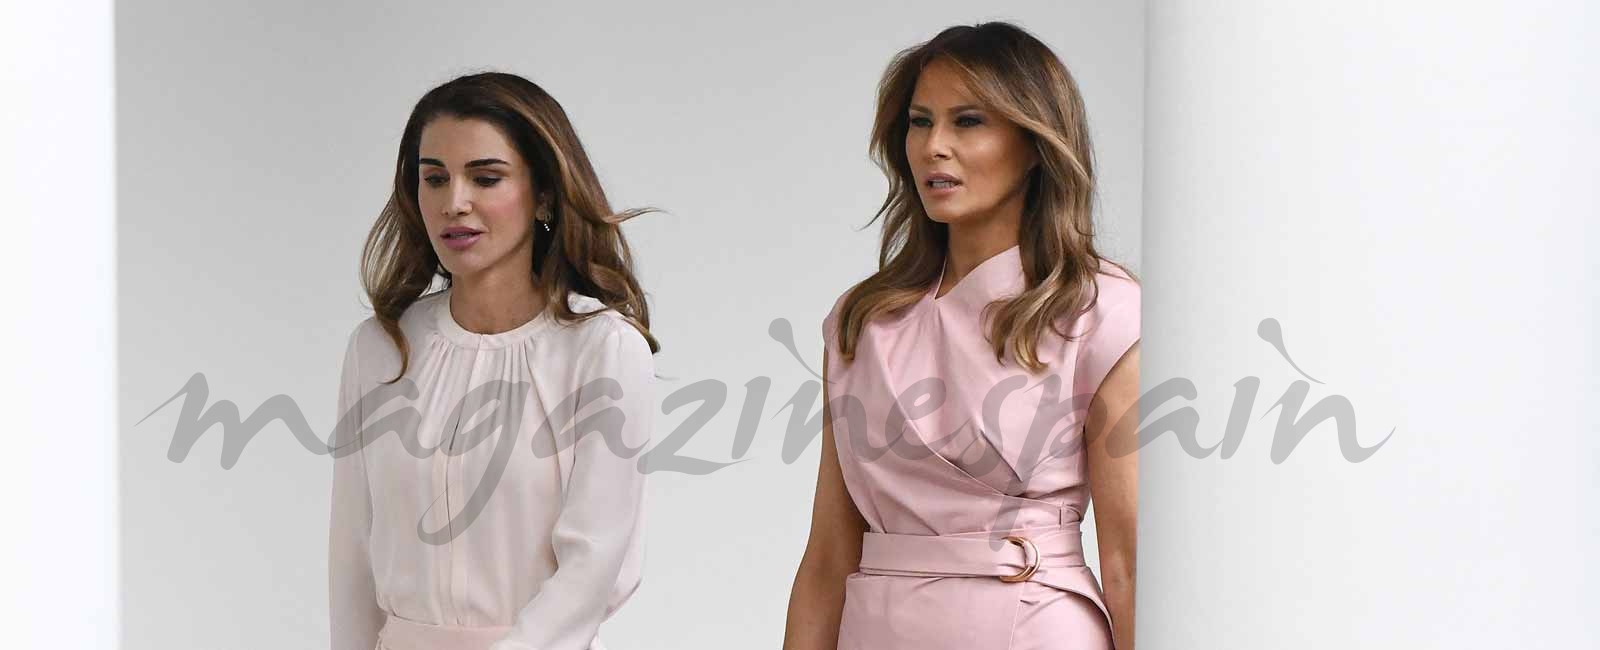 El duelo en rosa de Melania Trump y Rania de Jordania